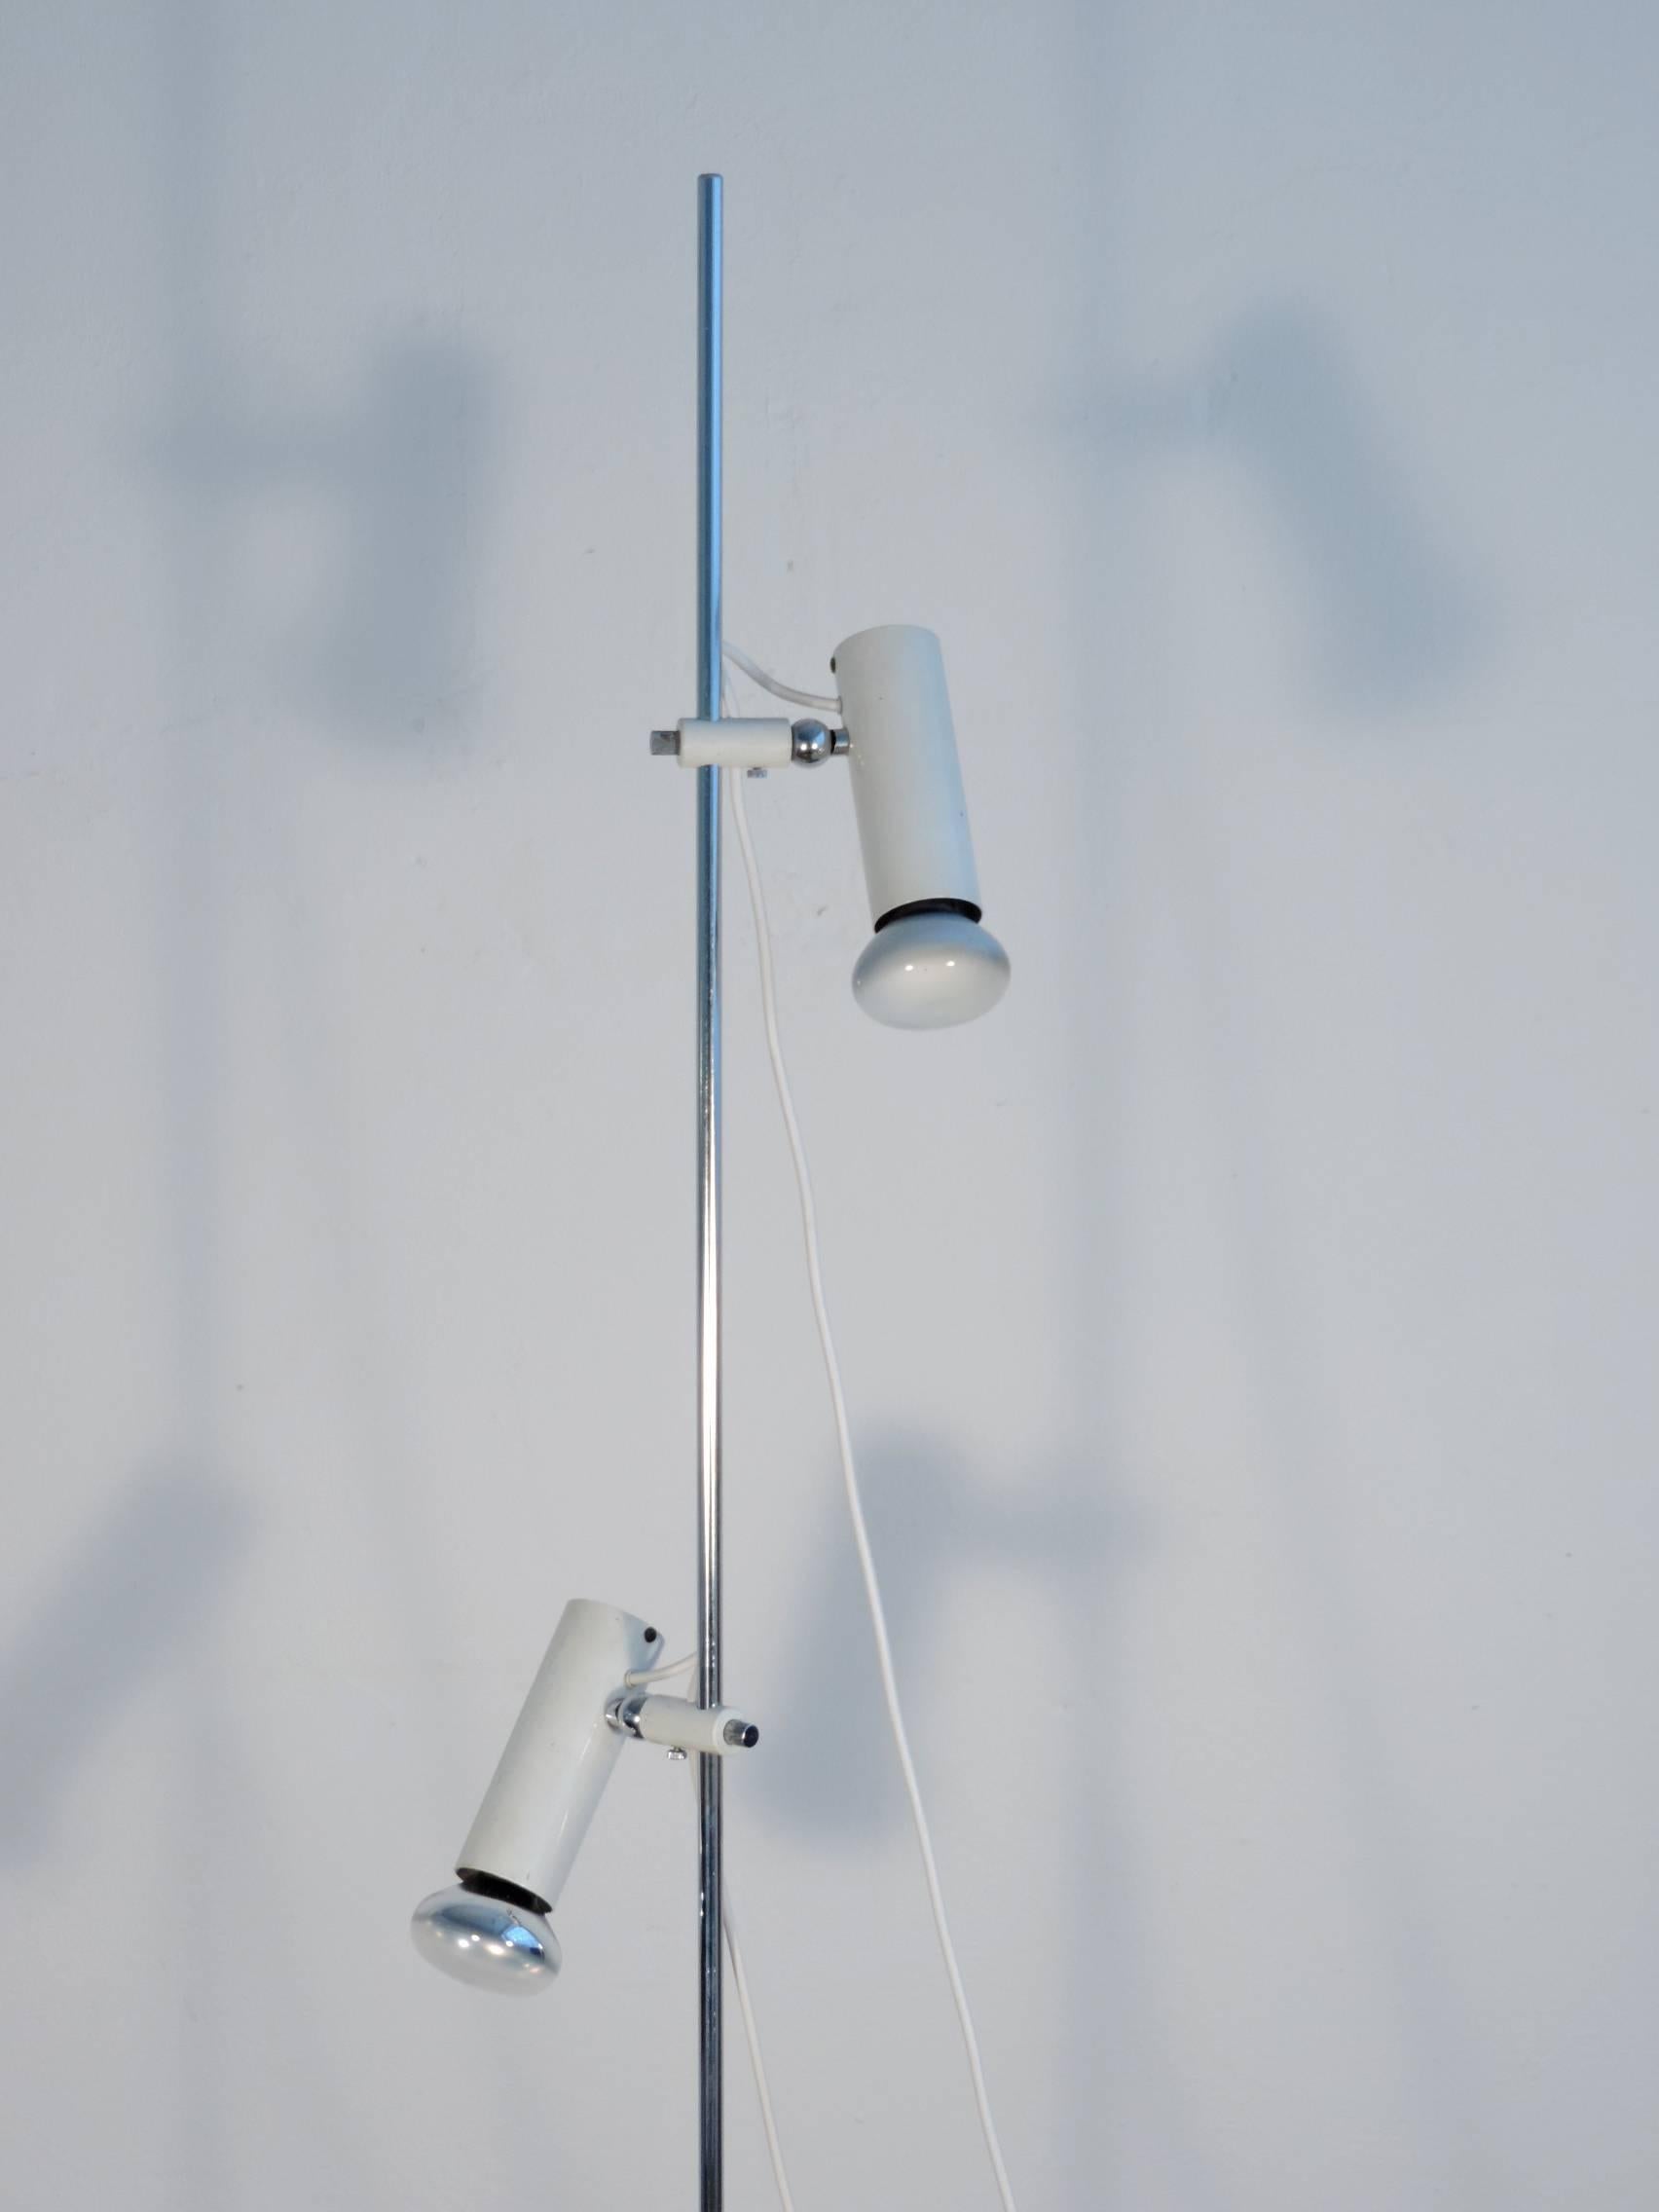 Gino Sarfatti Mod.1055 double spot floor lamp for Arteluce.